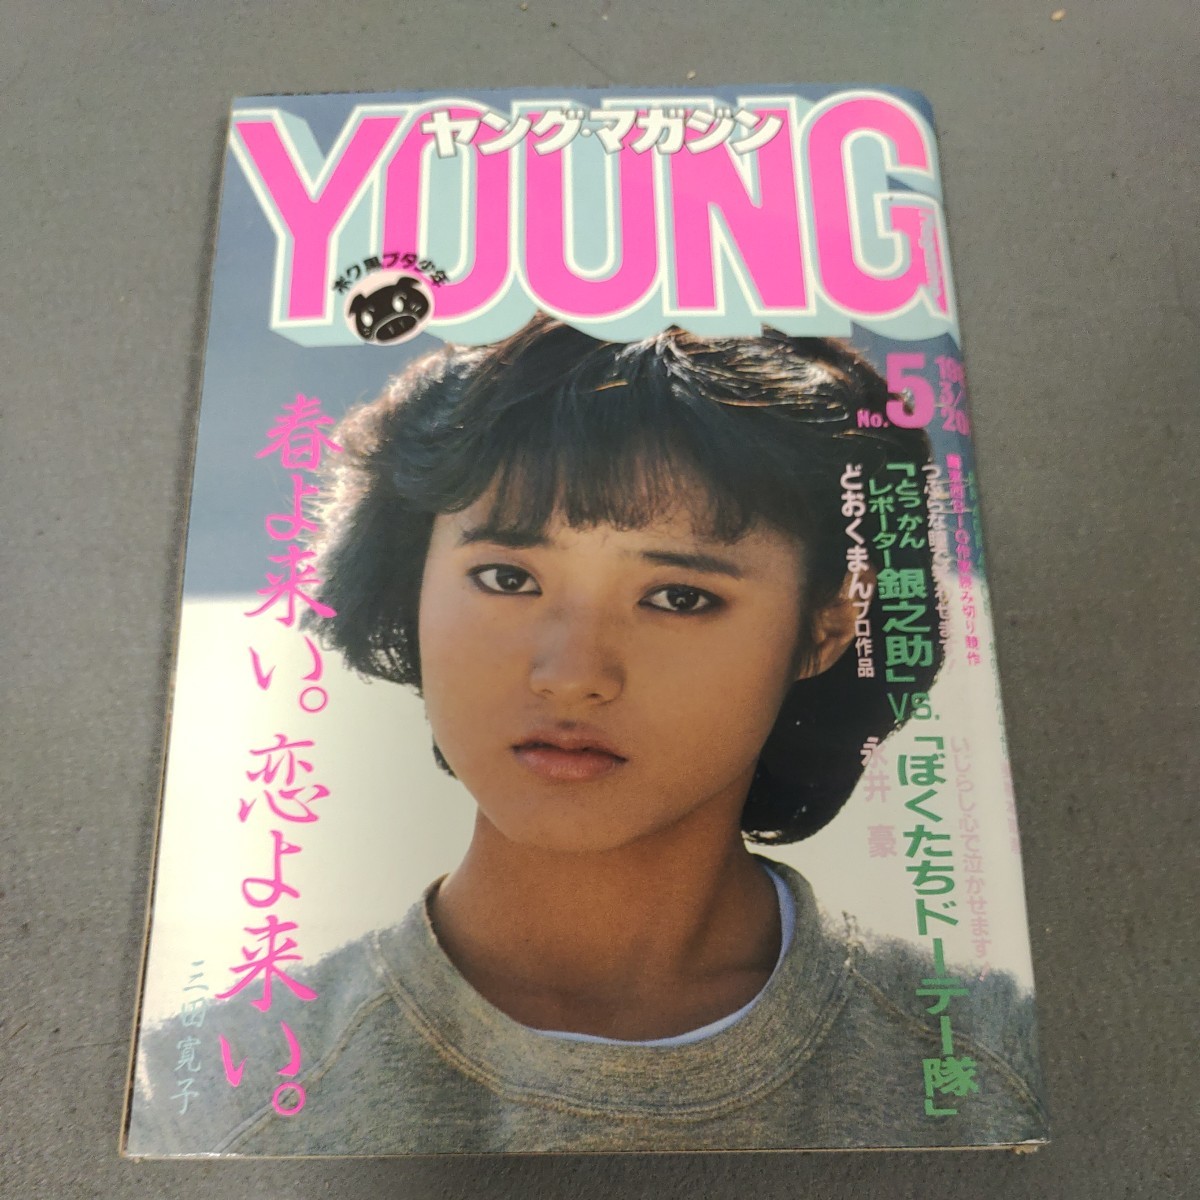 ヤングマガジン AKIRA アキラ 掲載号 1983年 - 青年漫画